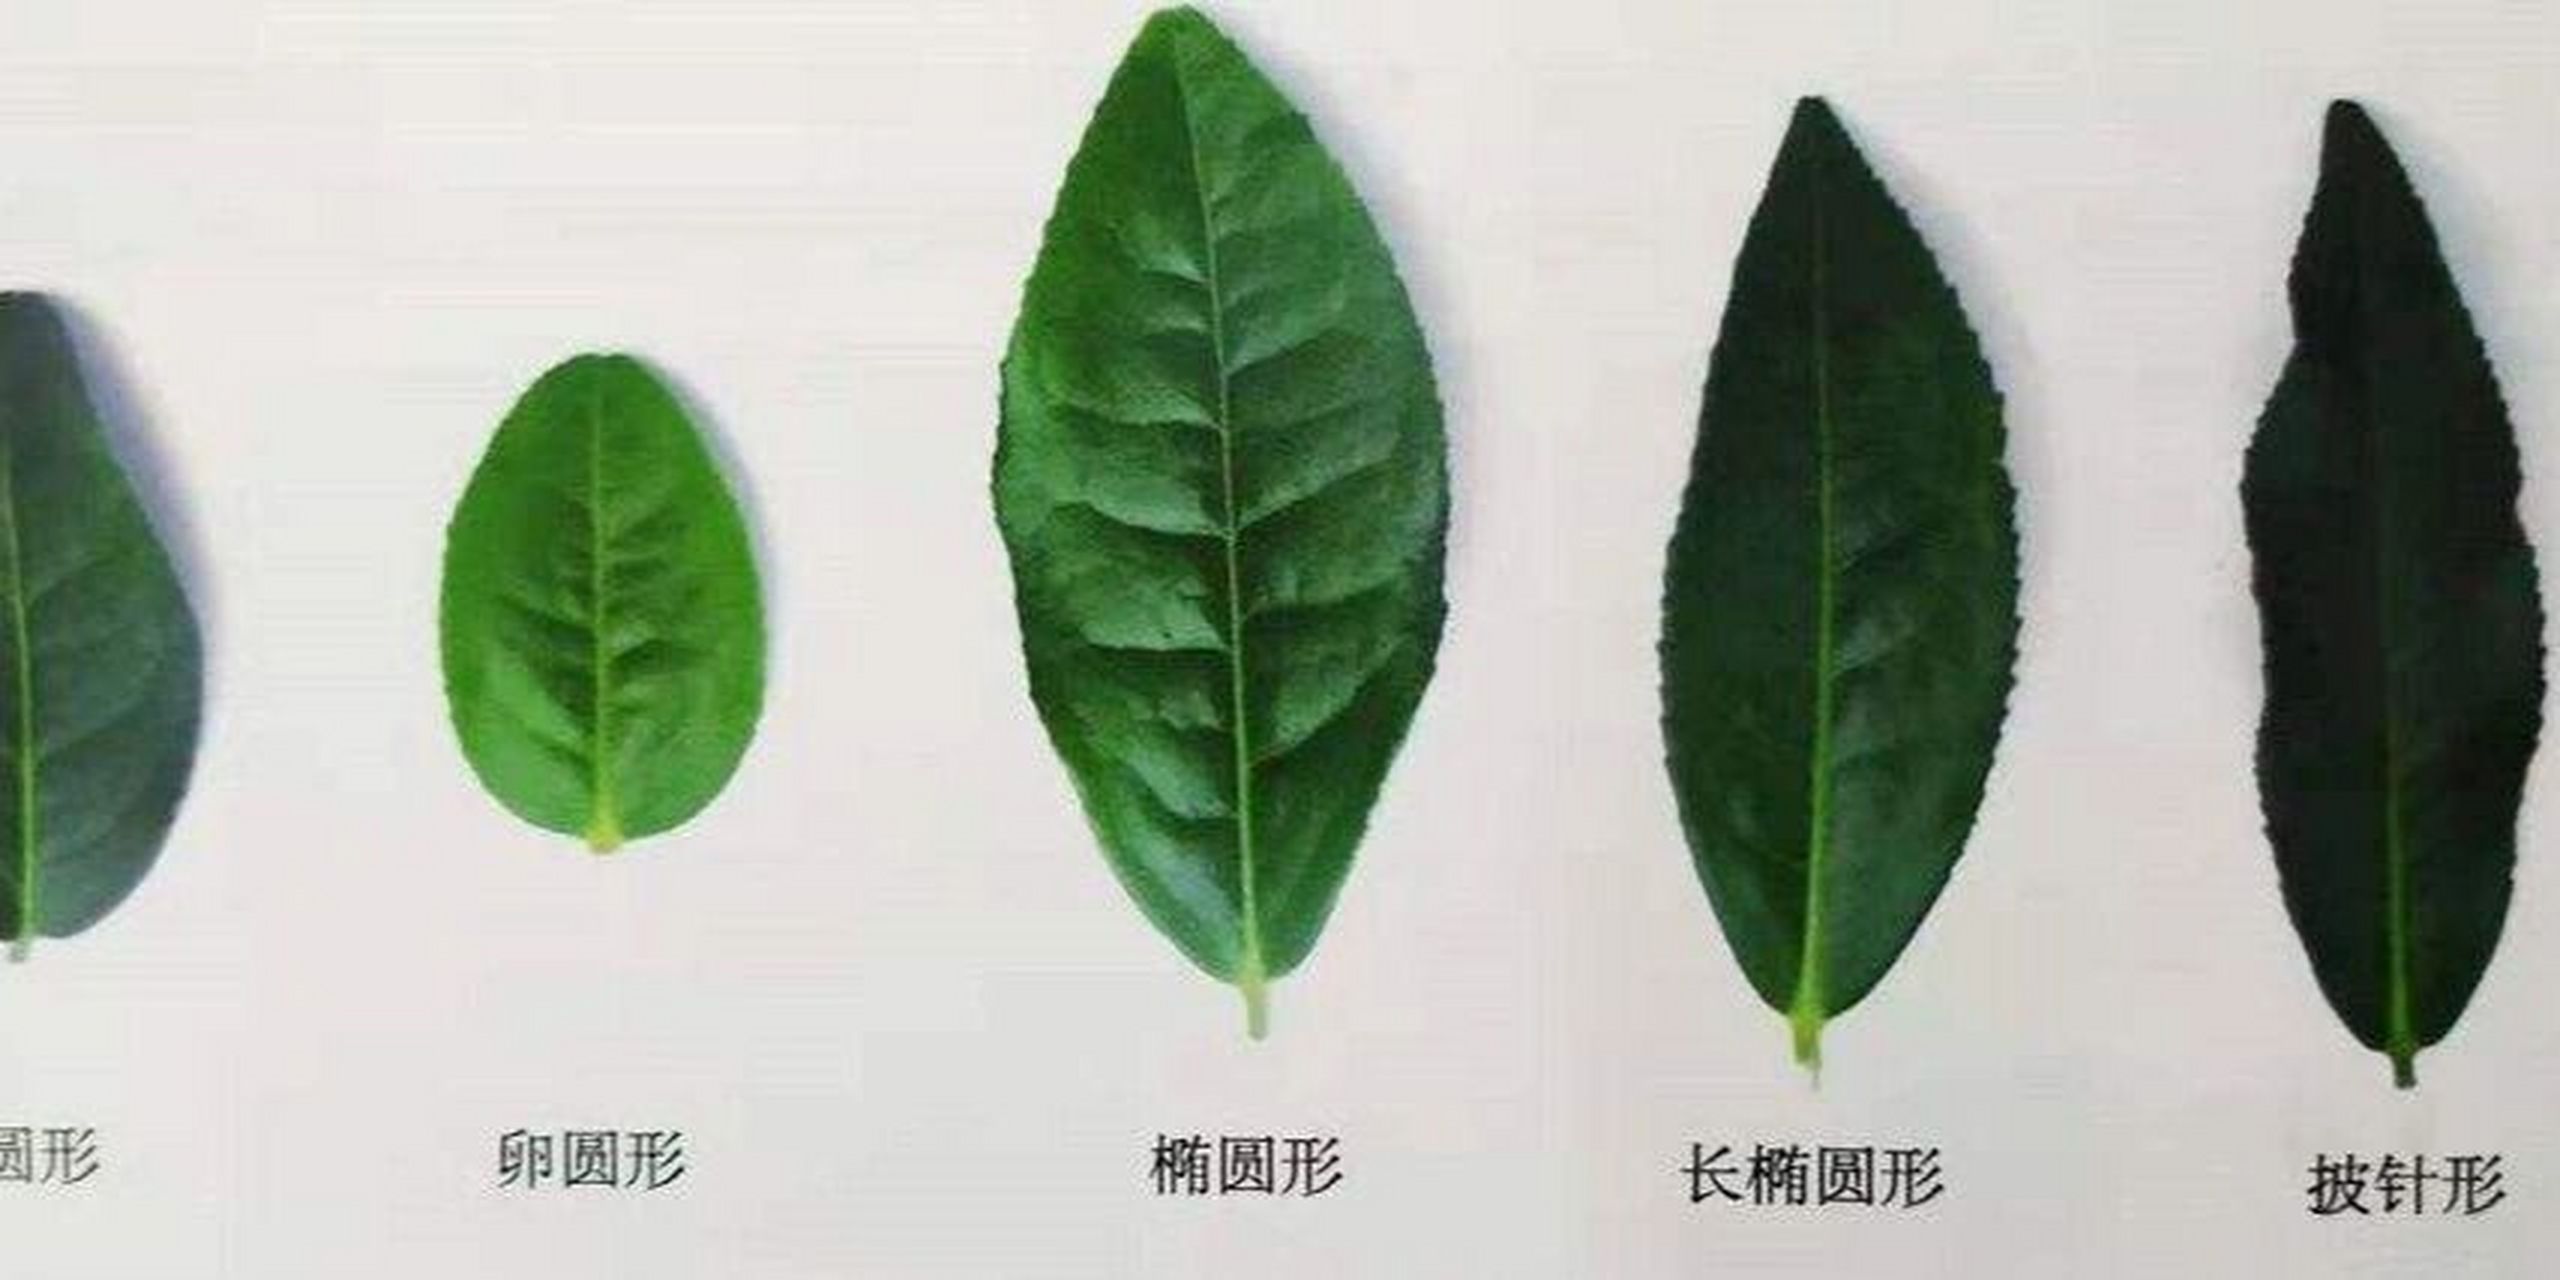 教你如何识别茶树叶～ 茶树叶片的叶缘离叶基(  )处没有锯齿